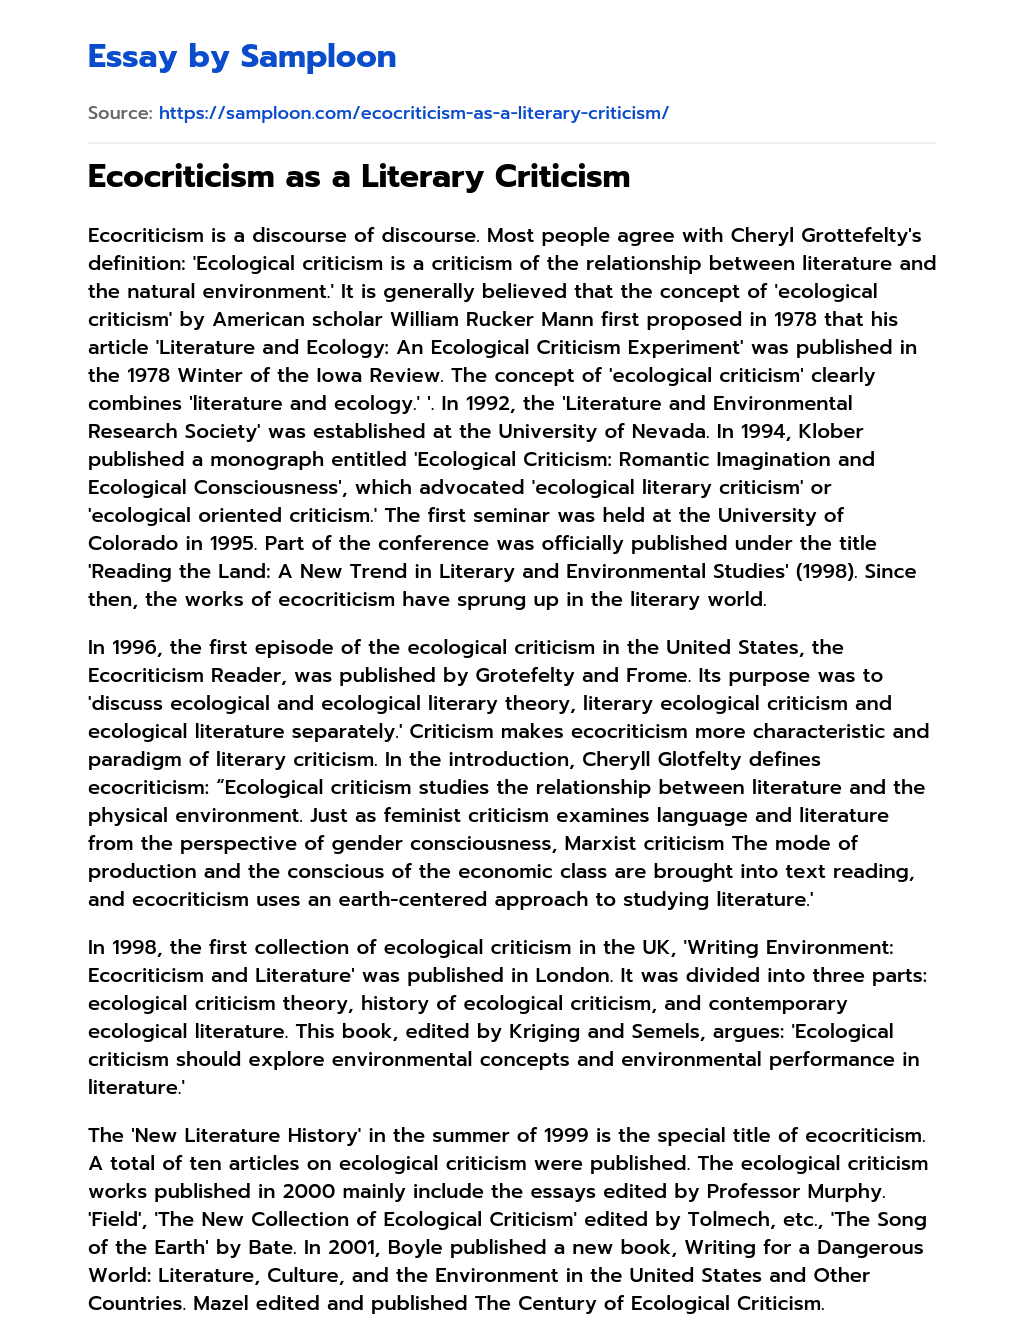 Ecocriticism as a Literary Criticism essay